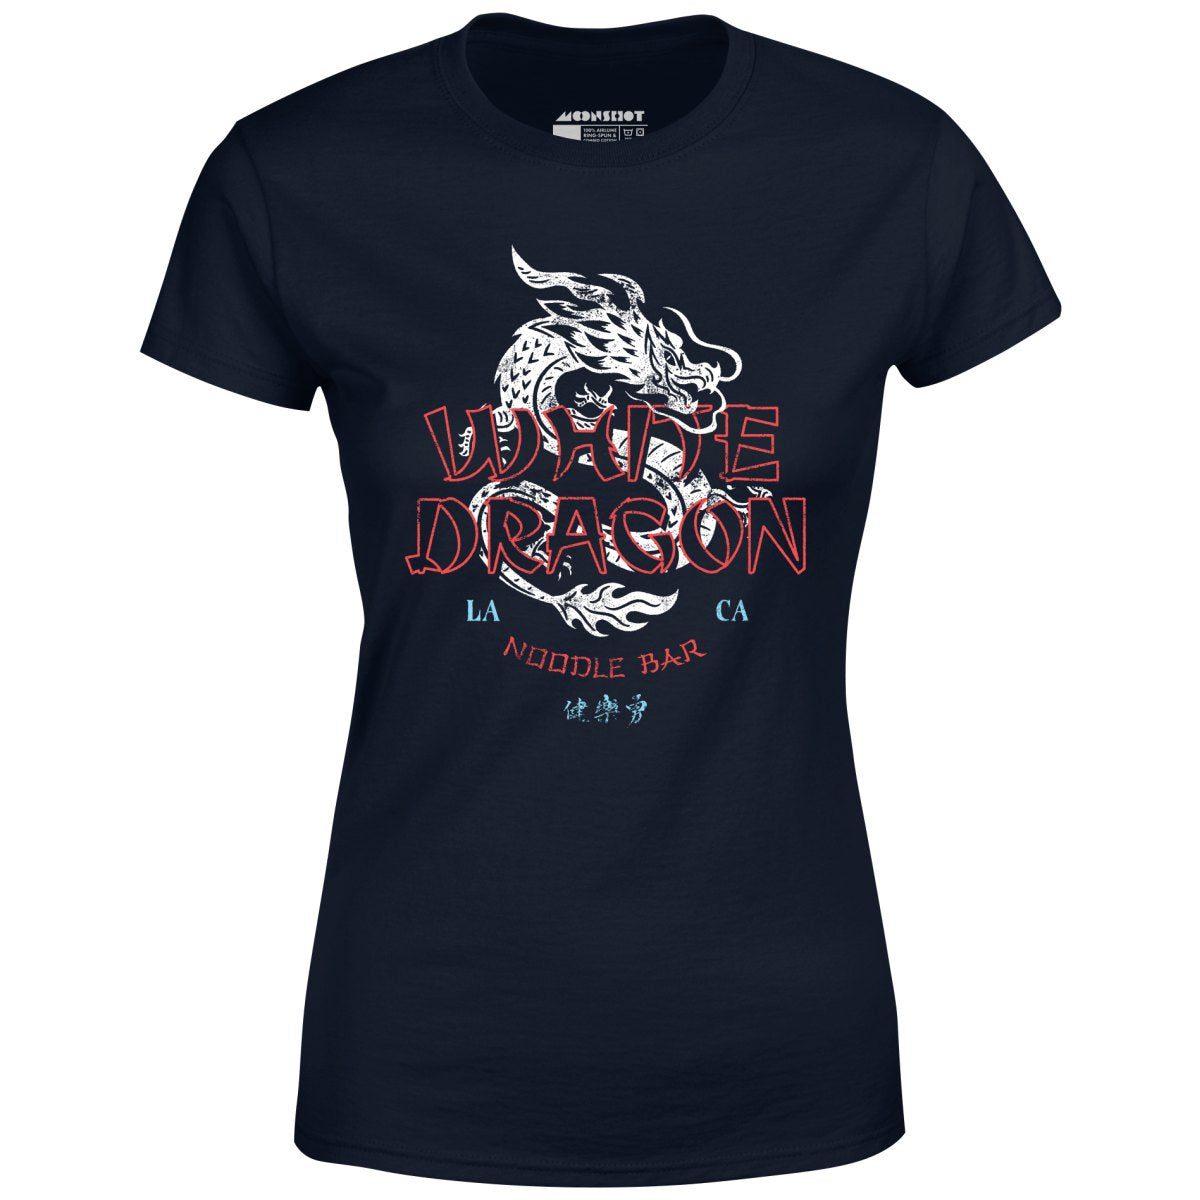 White Dragon Noodle Bar - Women's T-Shirt